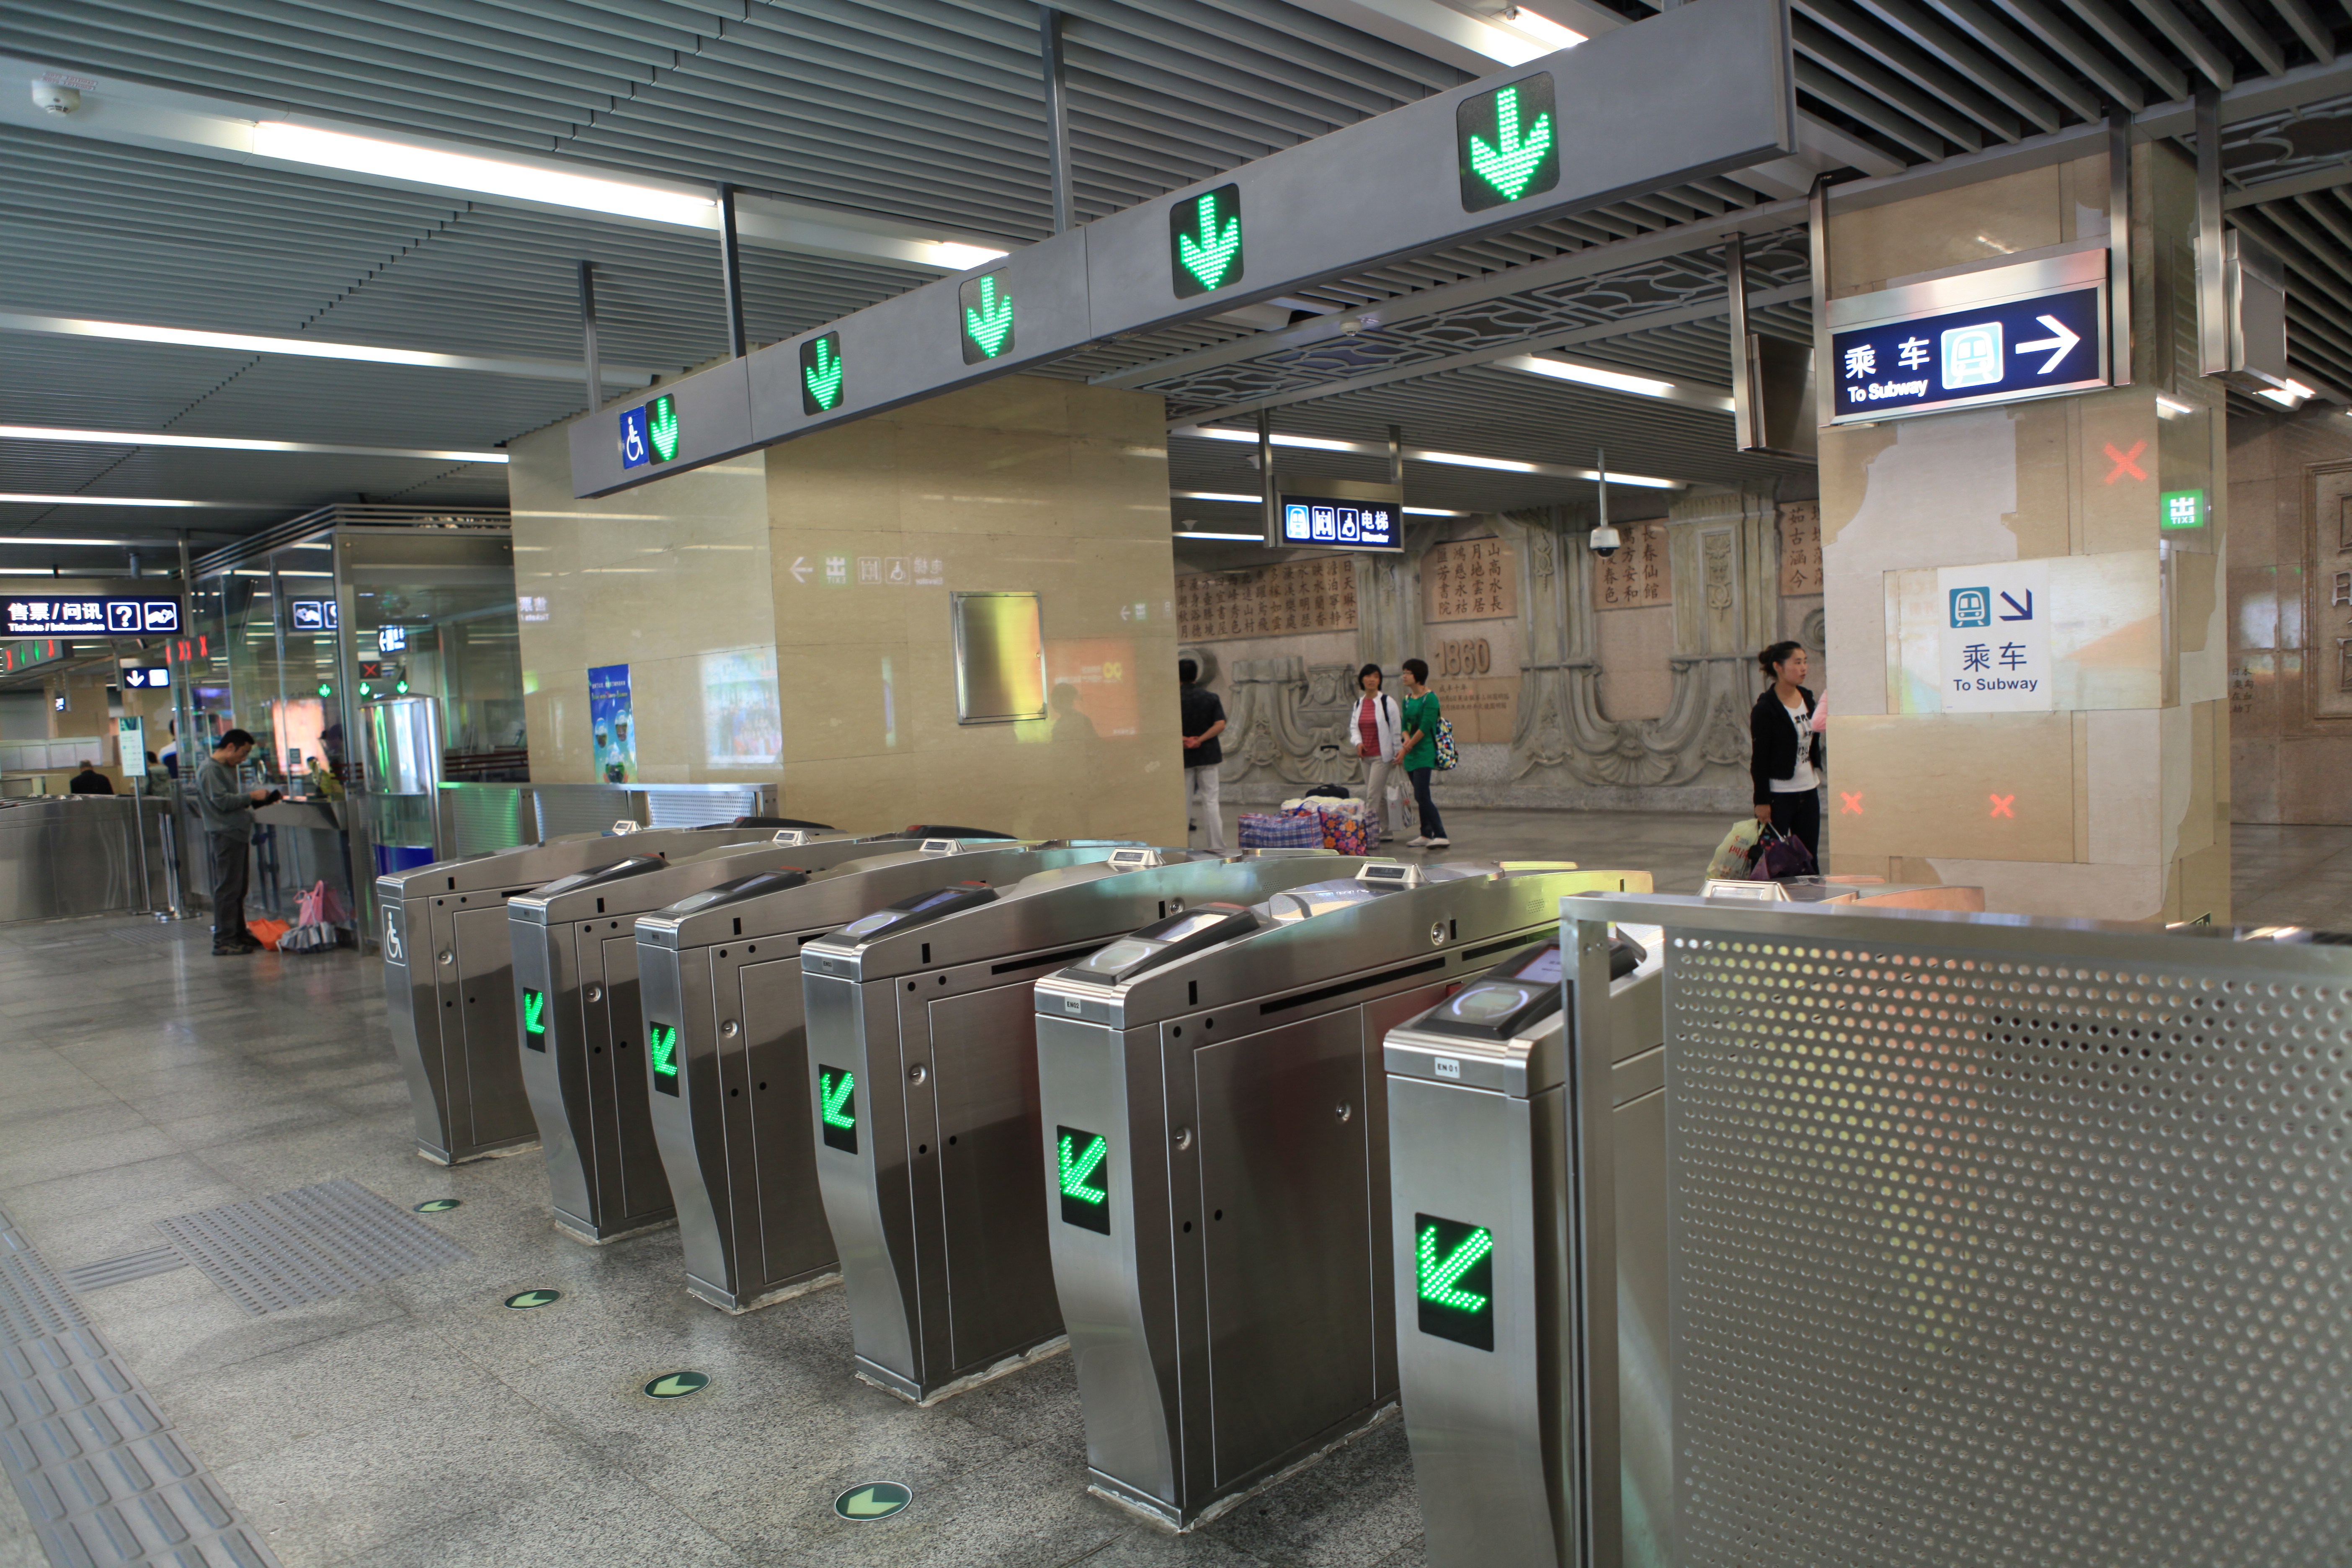 Пекинг има од Нове године најдужу метро мрежу на свету - 442 километара